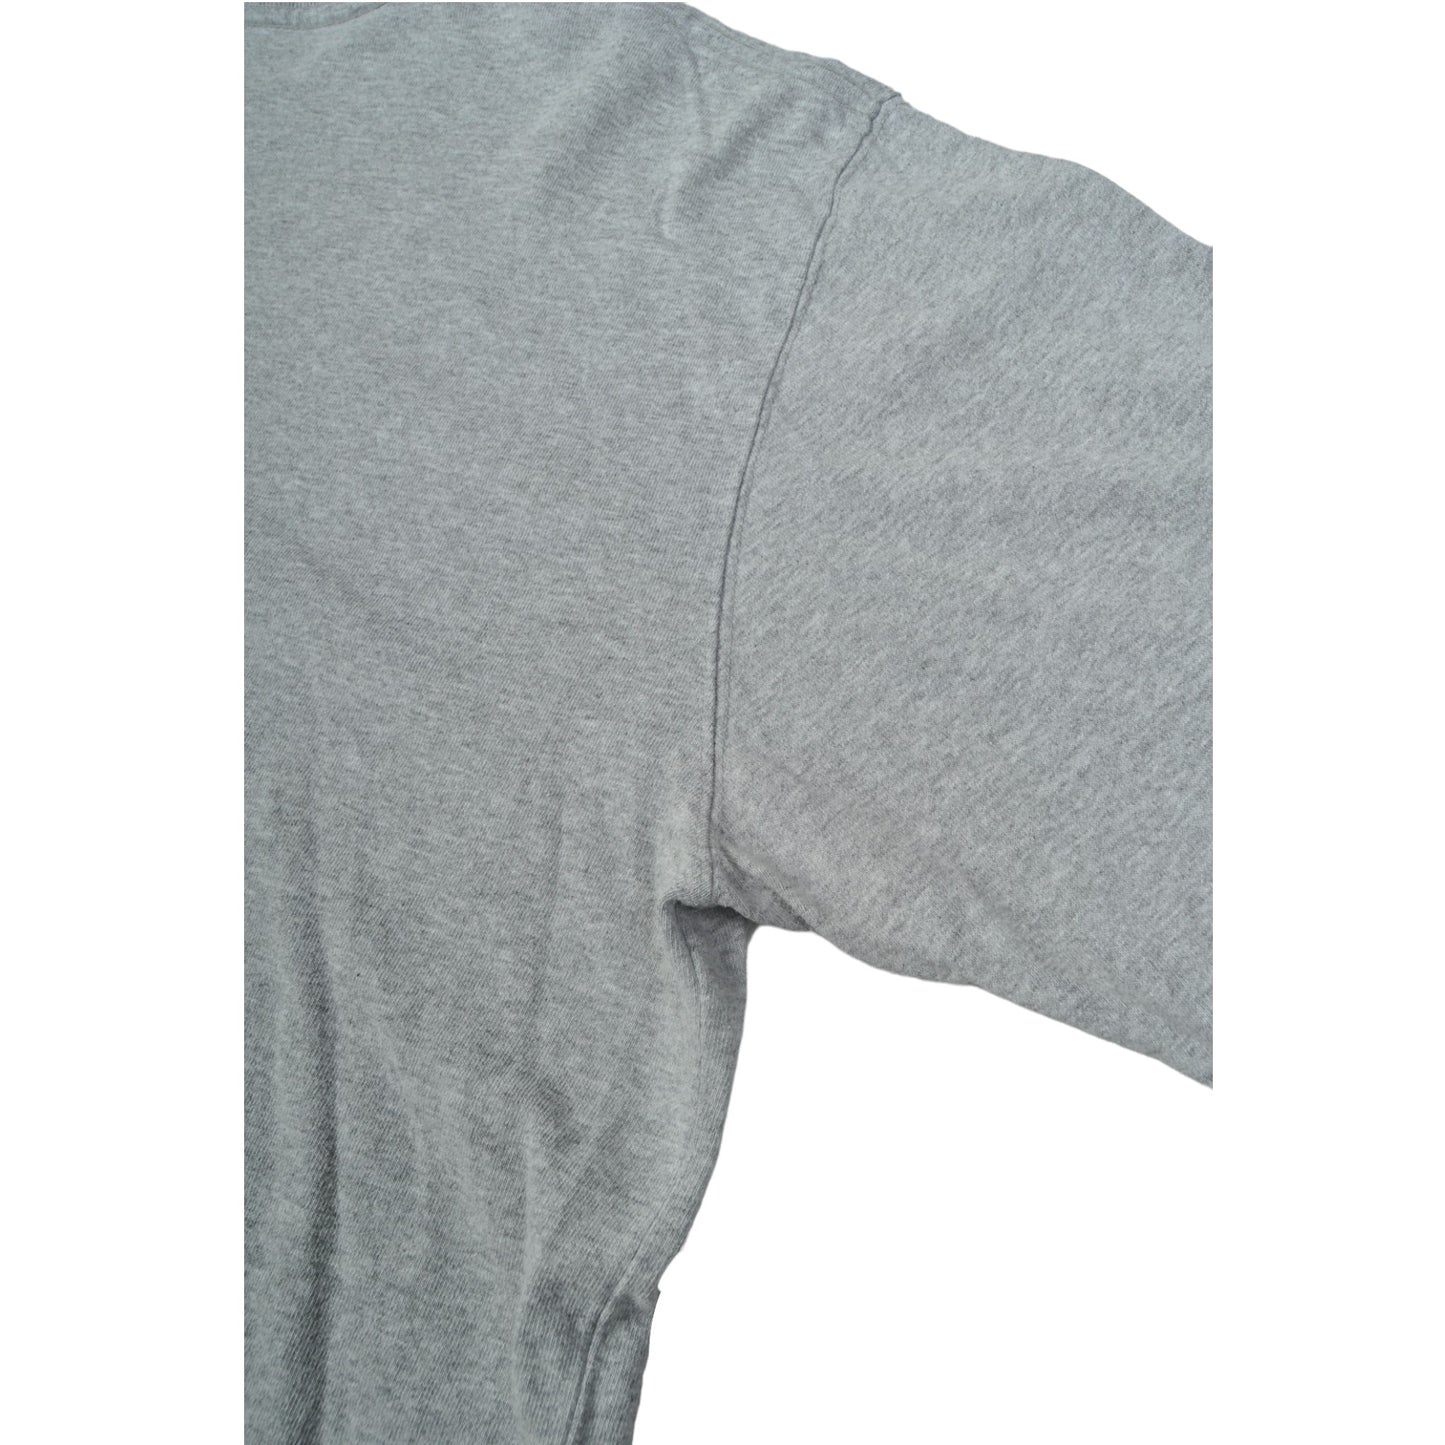 Vintage Carhartt Pocket Long Sleeve T-Shirt Grey Medium